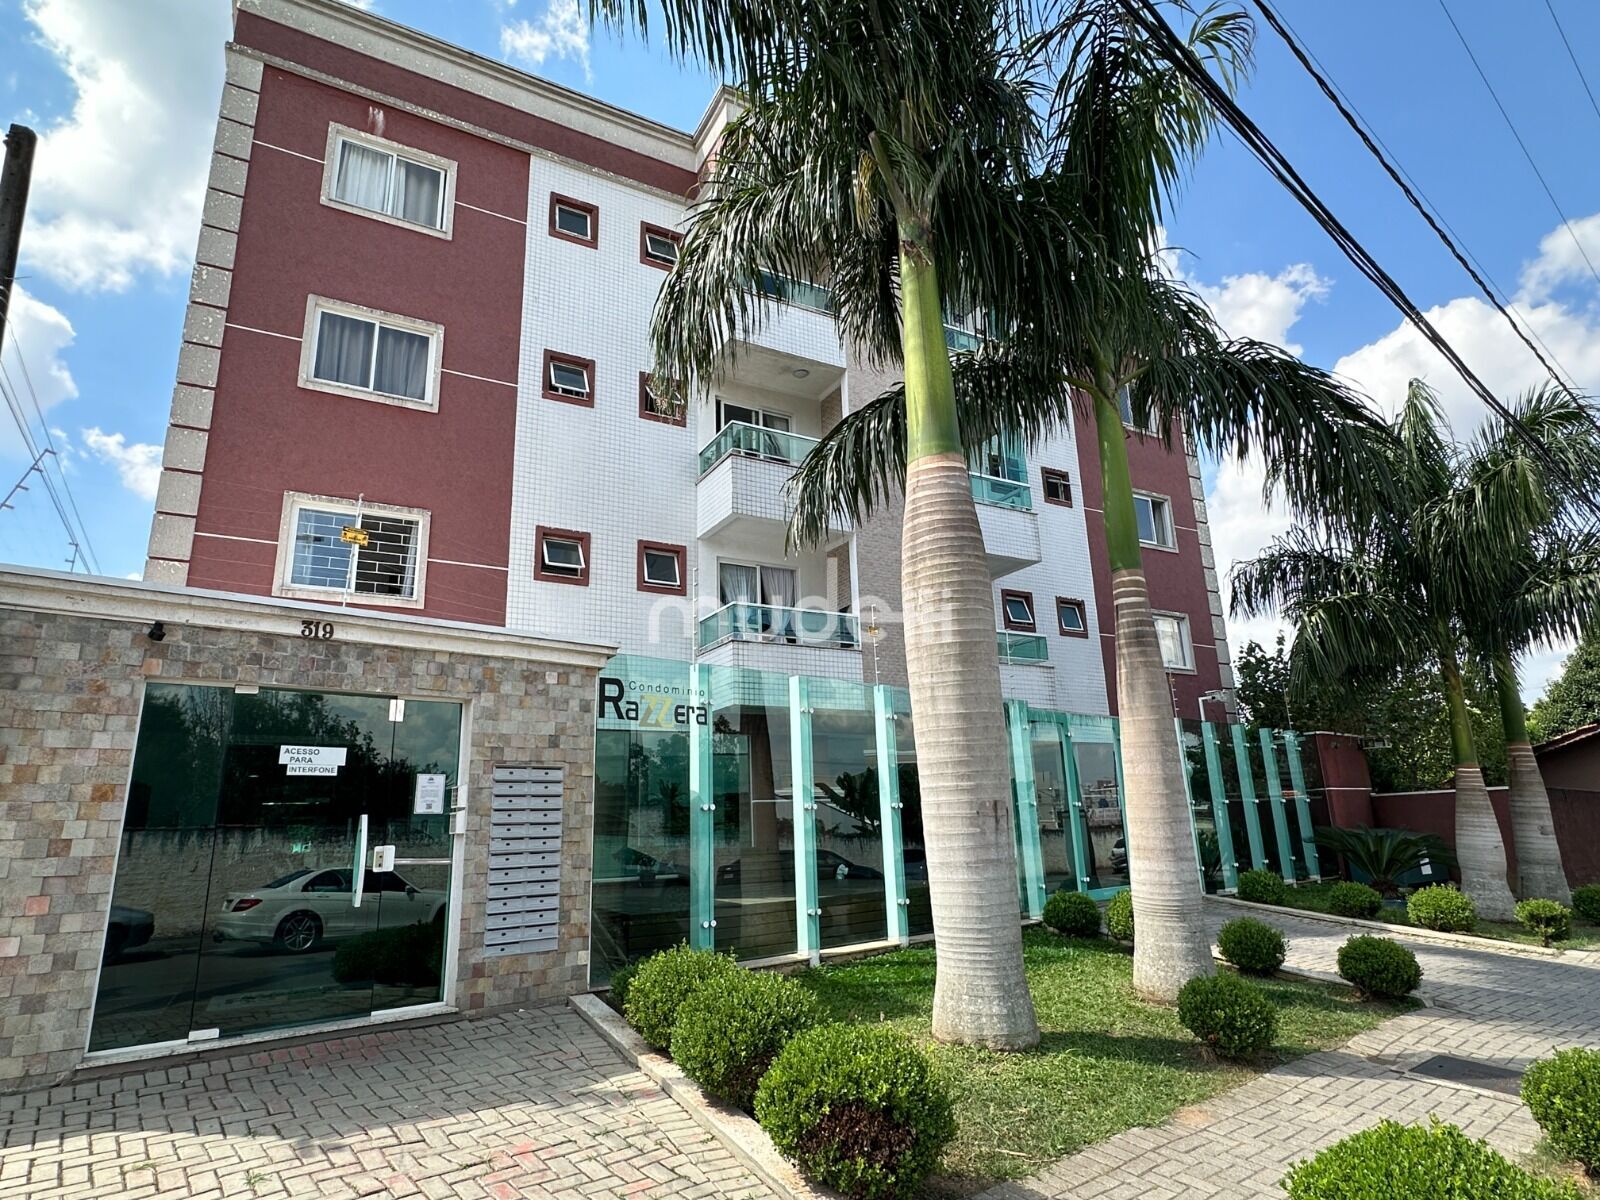 Apartamento à venda no bairro Bom Jesus - São José dos Pinhais/PR